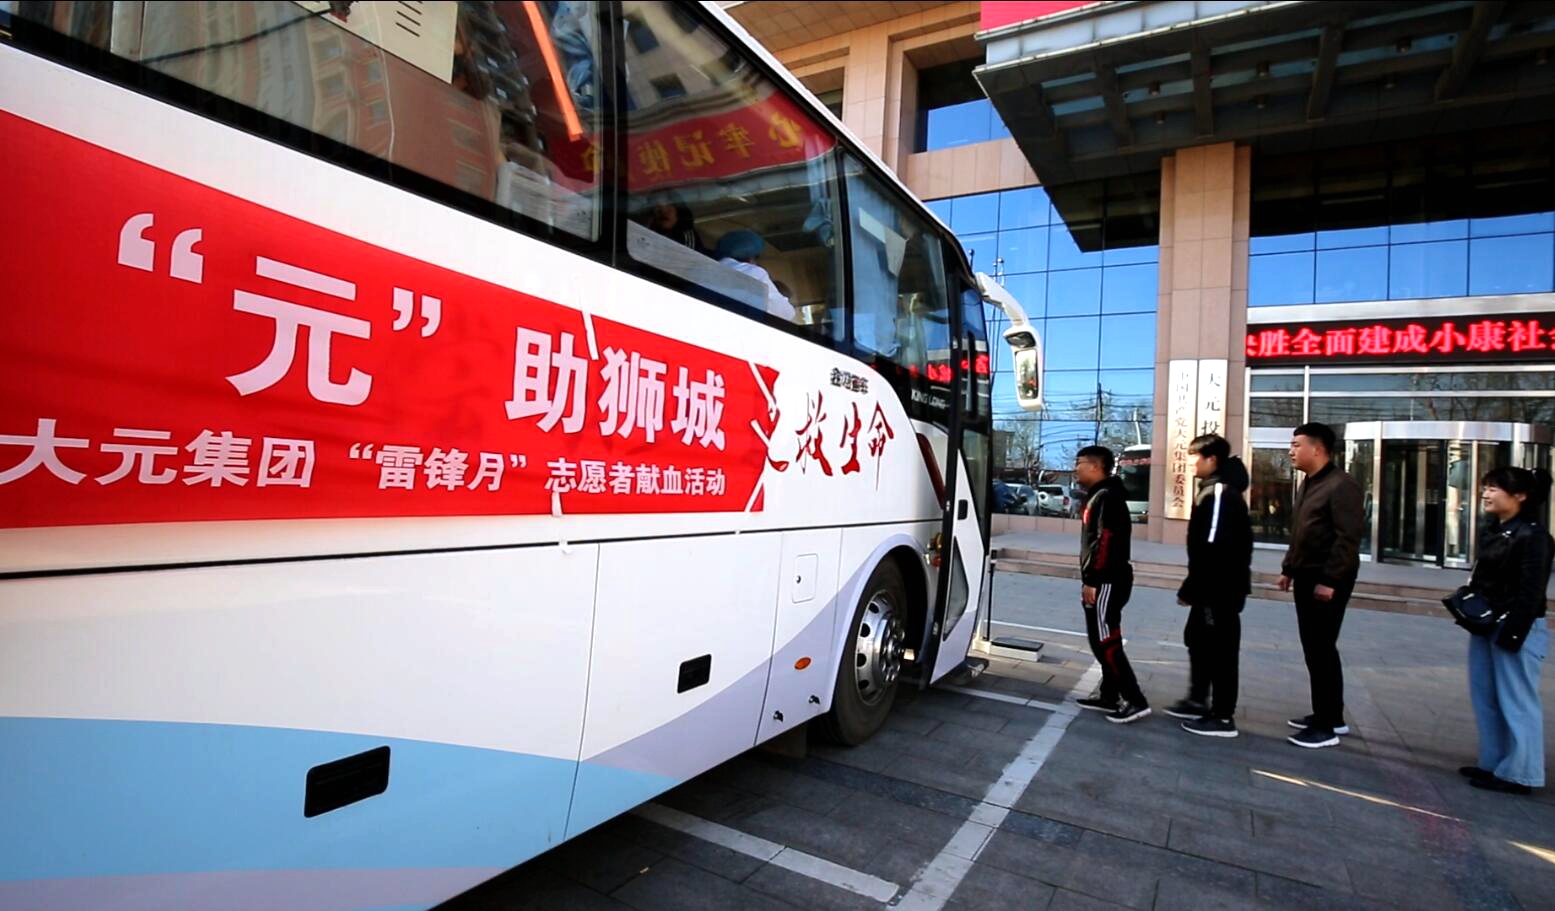 沧州电视台报道大元集团“雷锋月”公益献血活动